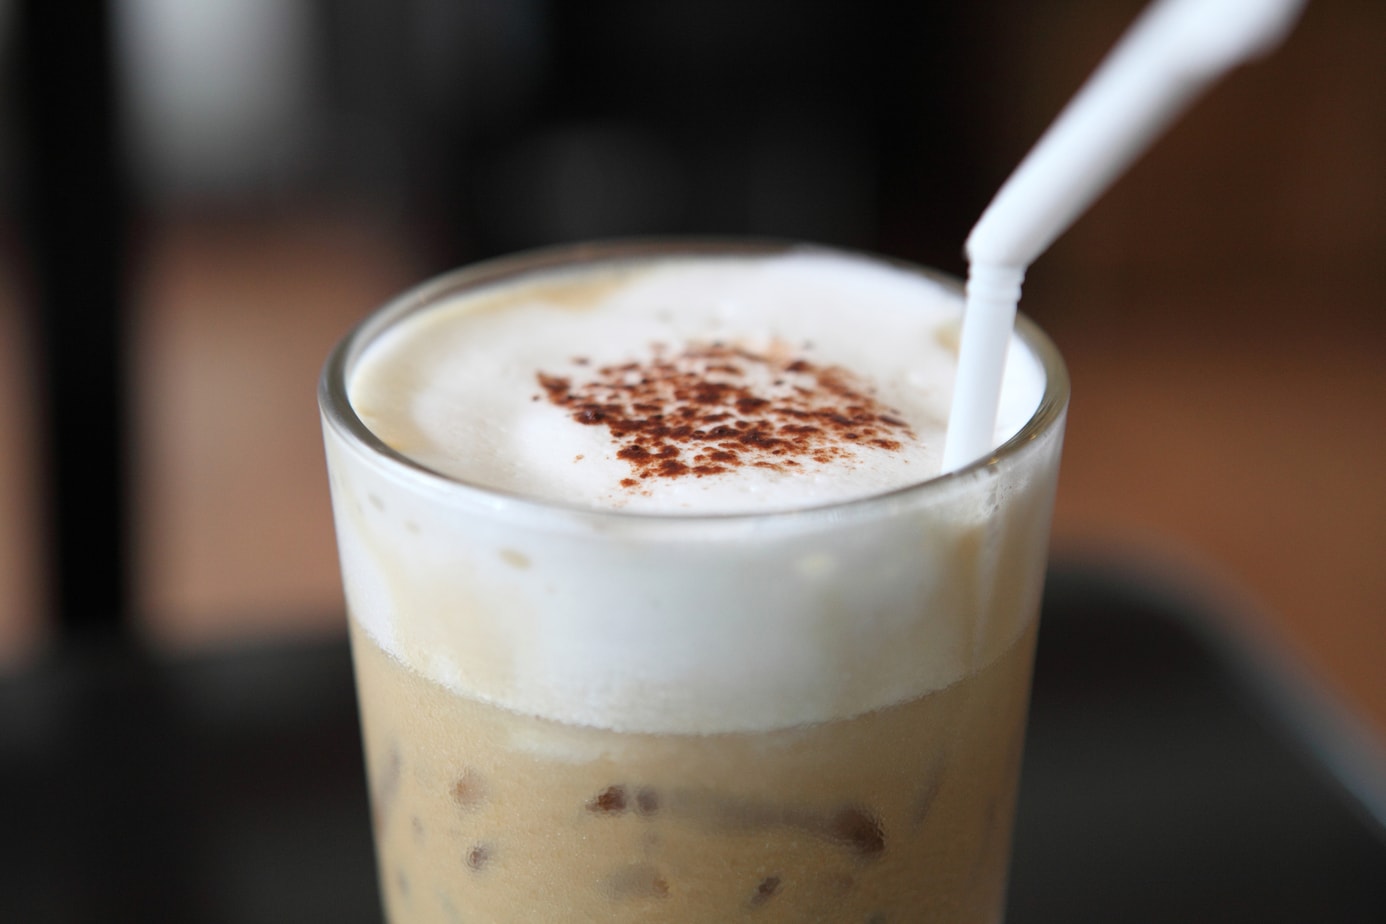 Agregar cacao en polvo al café: una preparación más sabrosa